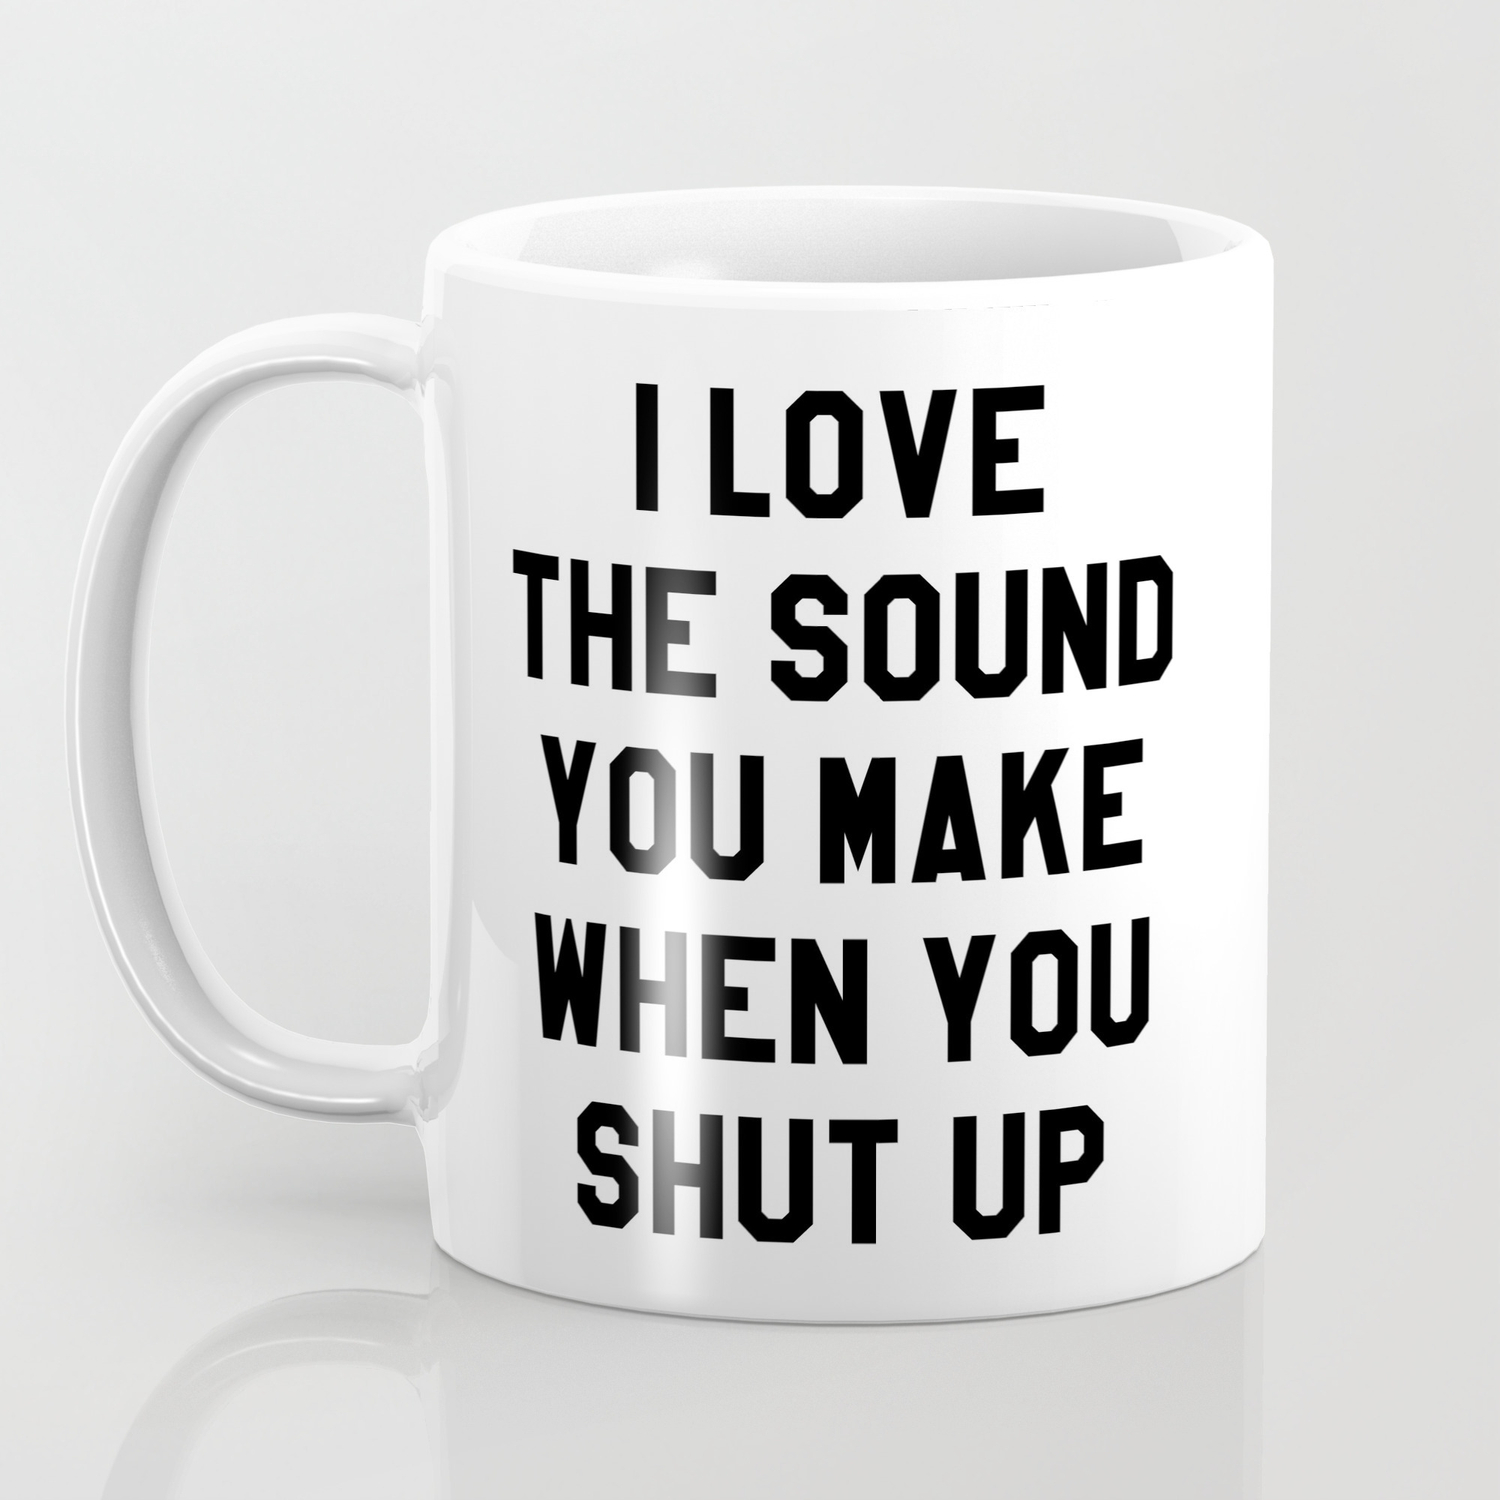 I Like The Sound You Make When You Shut Up Mug Cup 